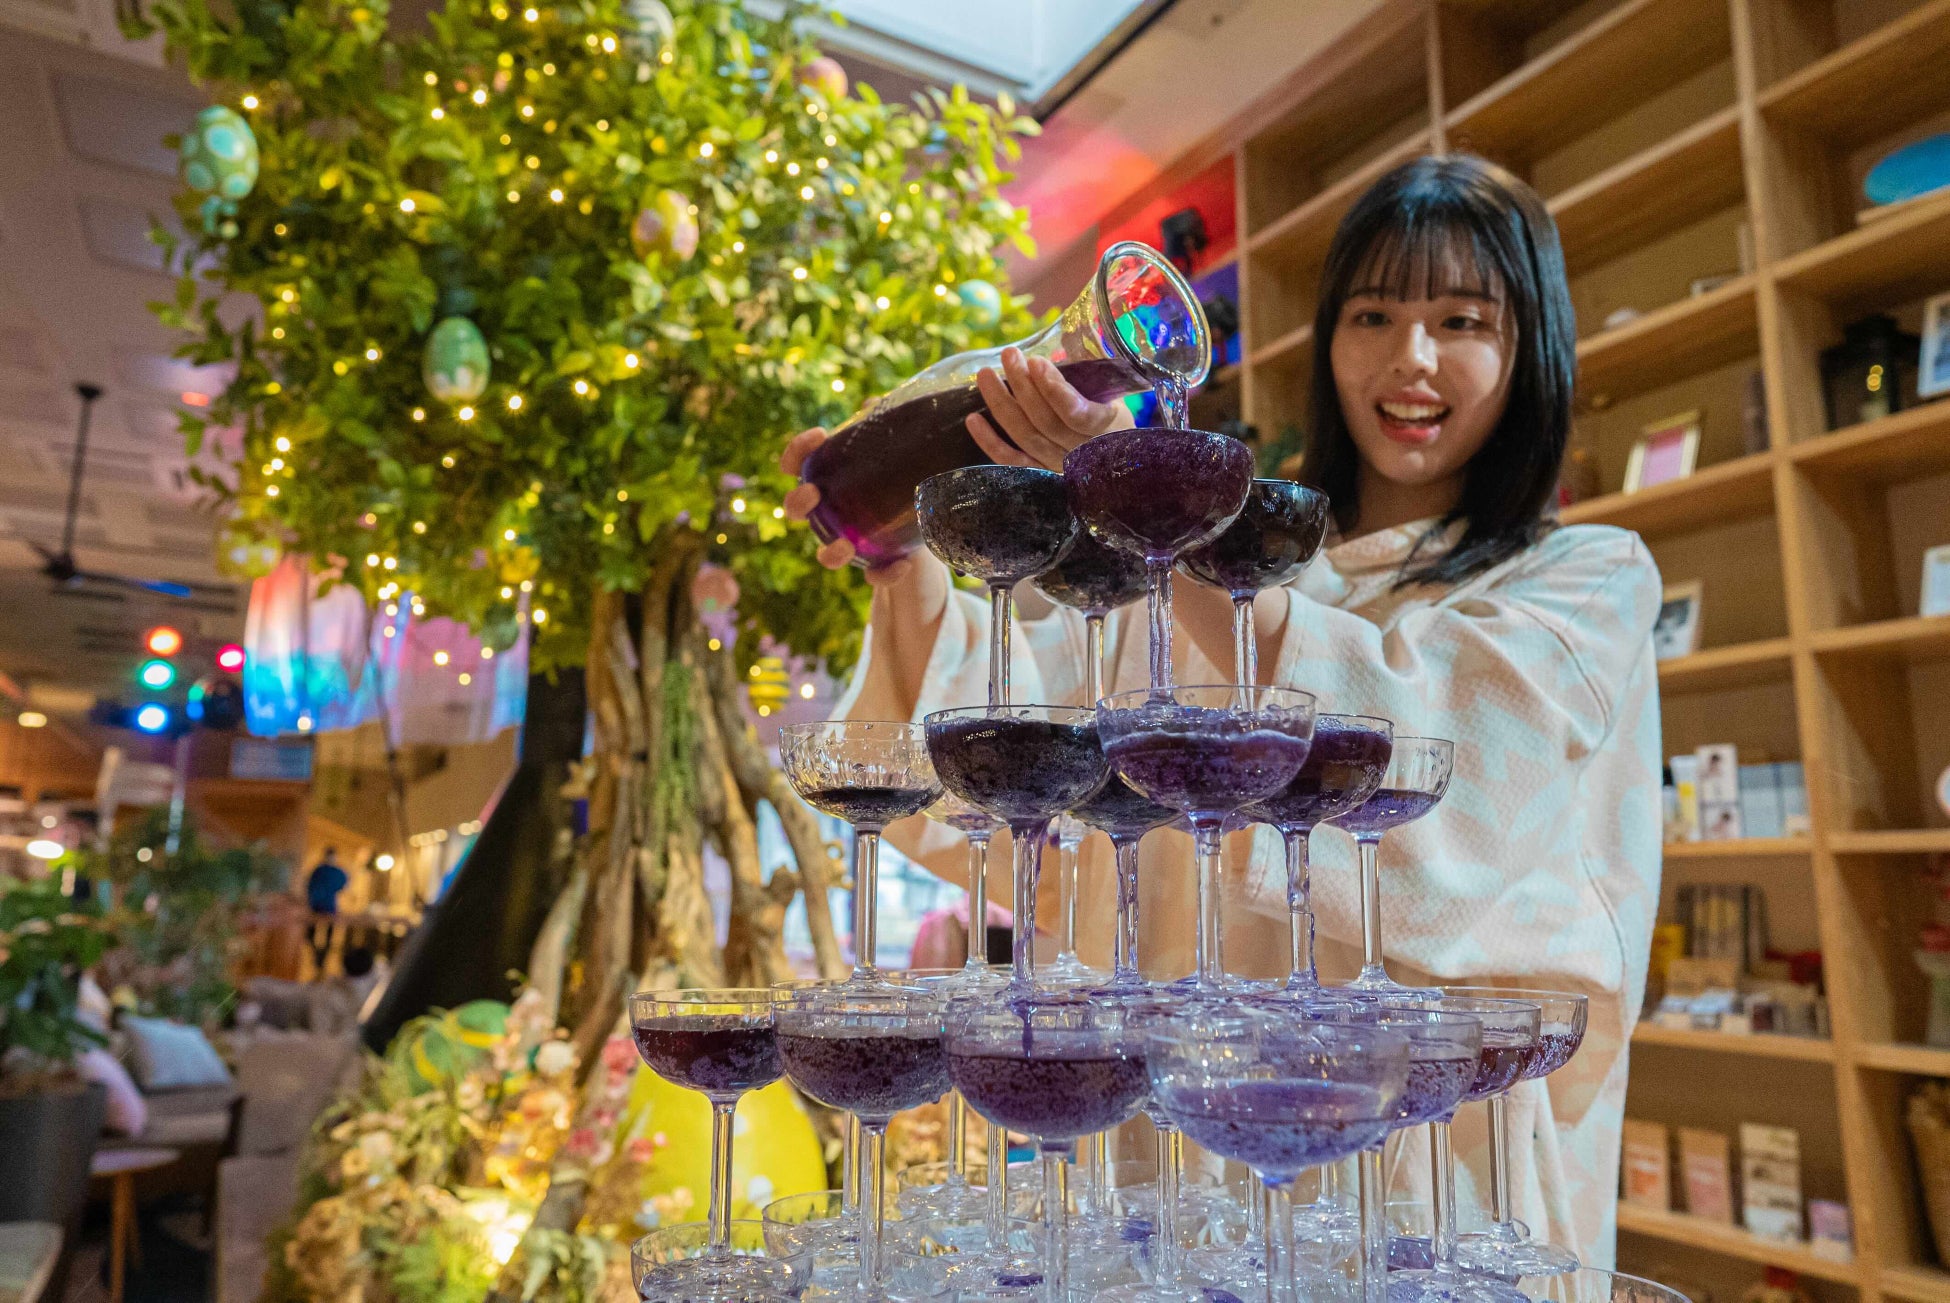 おふろcafe utataneのGWイベントは「北欧フェスティバル」埼玉にいながらサウナとグルメで北欧旅気分を味わう10日間